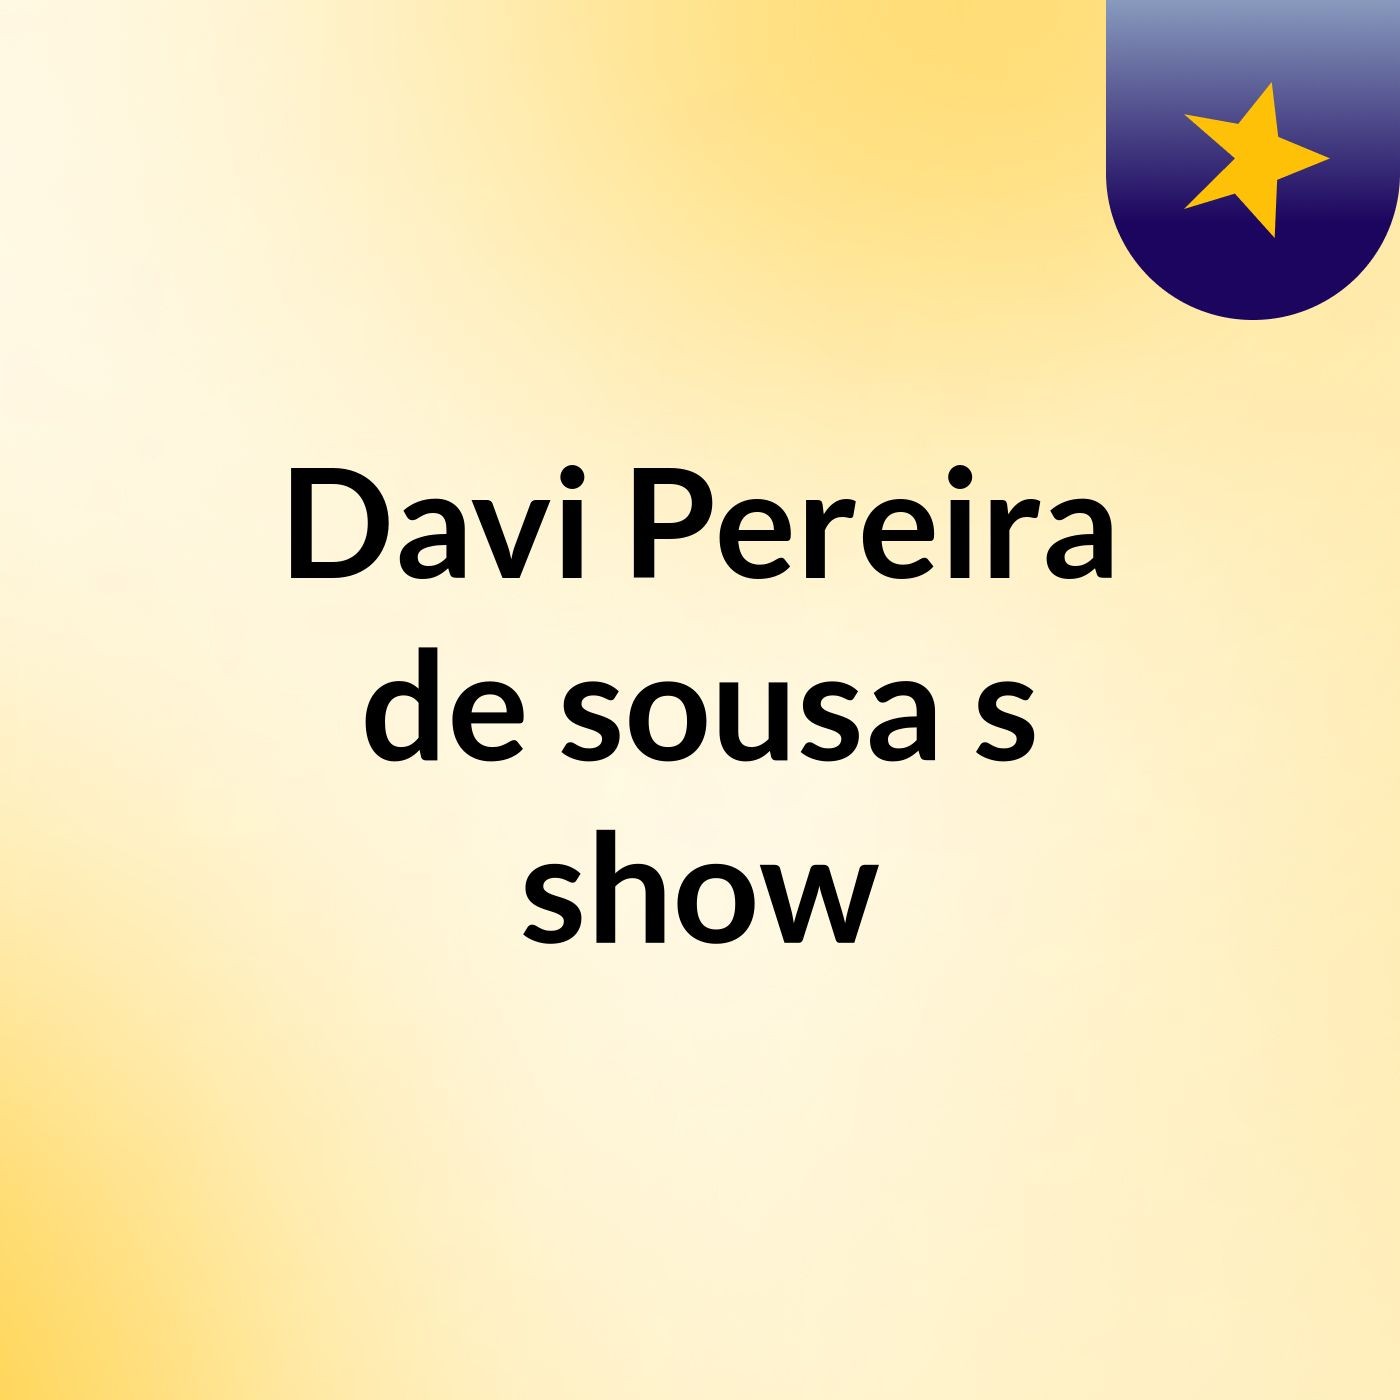 Davi Pereira de sousa's show